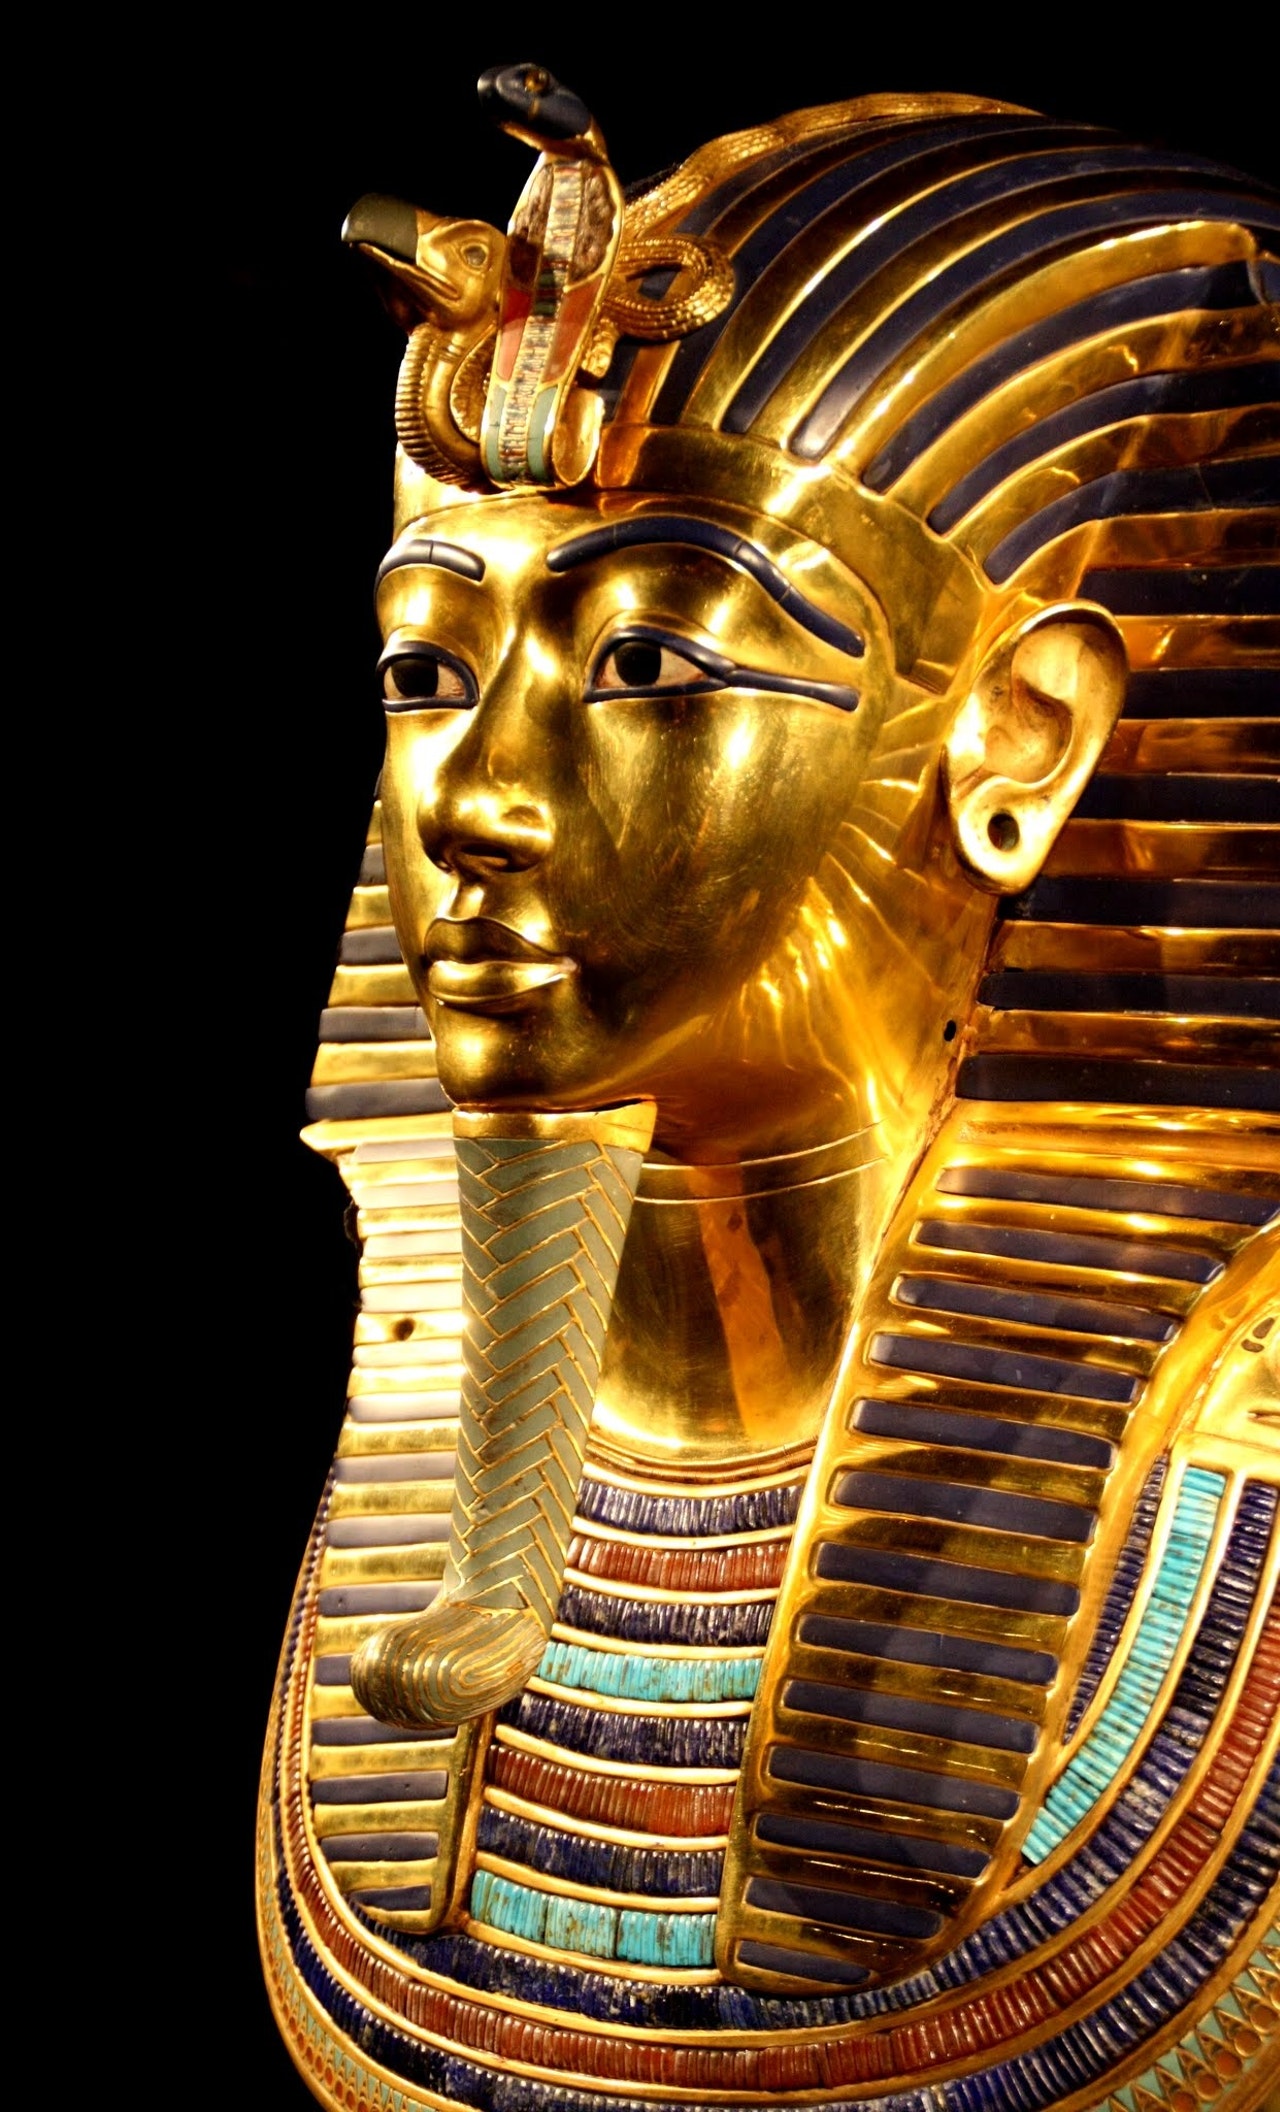 Єгипет планує 2-й унікальний парад для передачі царя Тутанхамона до Великого Єгипетського музею